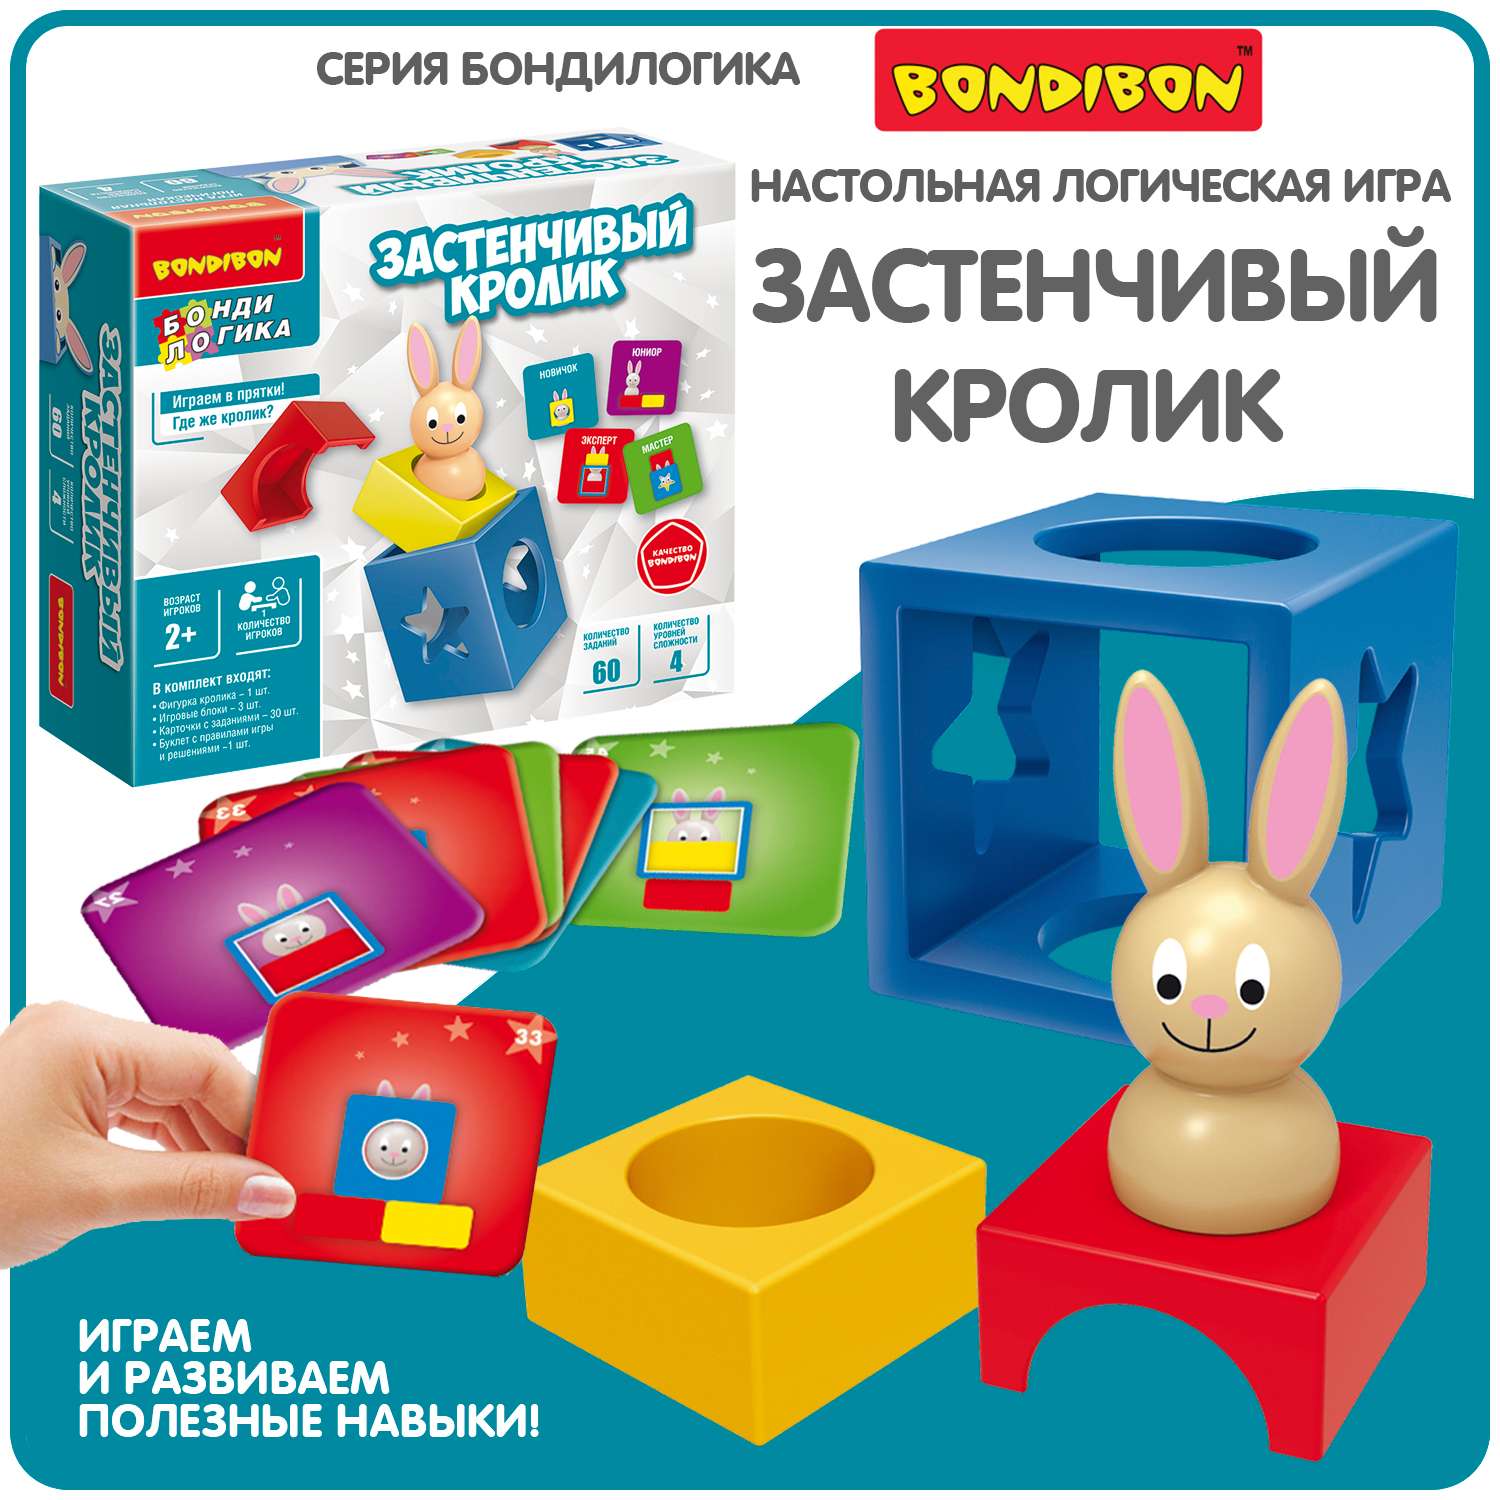 Настольная логическая игра BONDIBON головоломка на логику и пространственное мышление Застенчивый Кролик серия БондиЛогика - фото 1